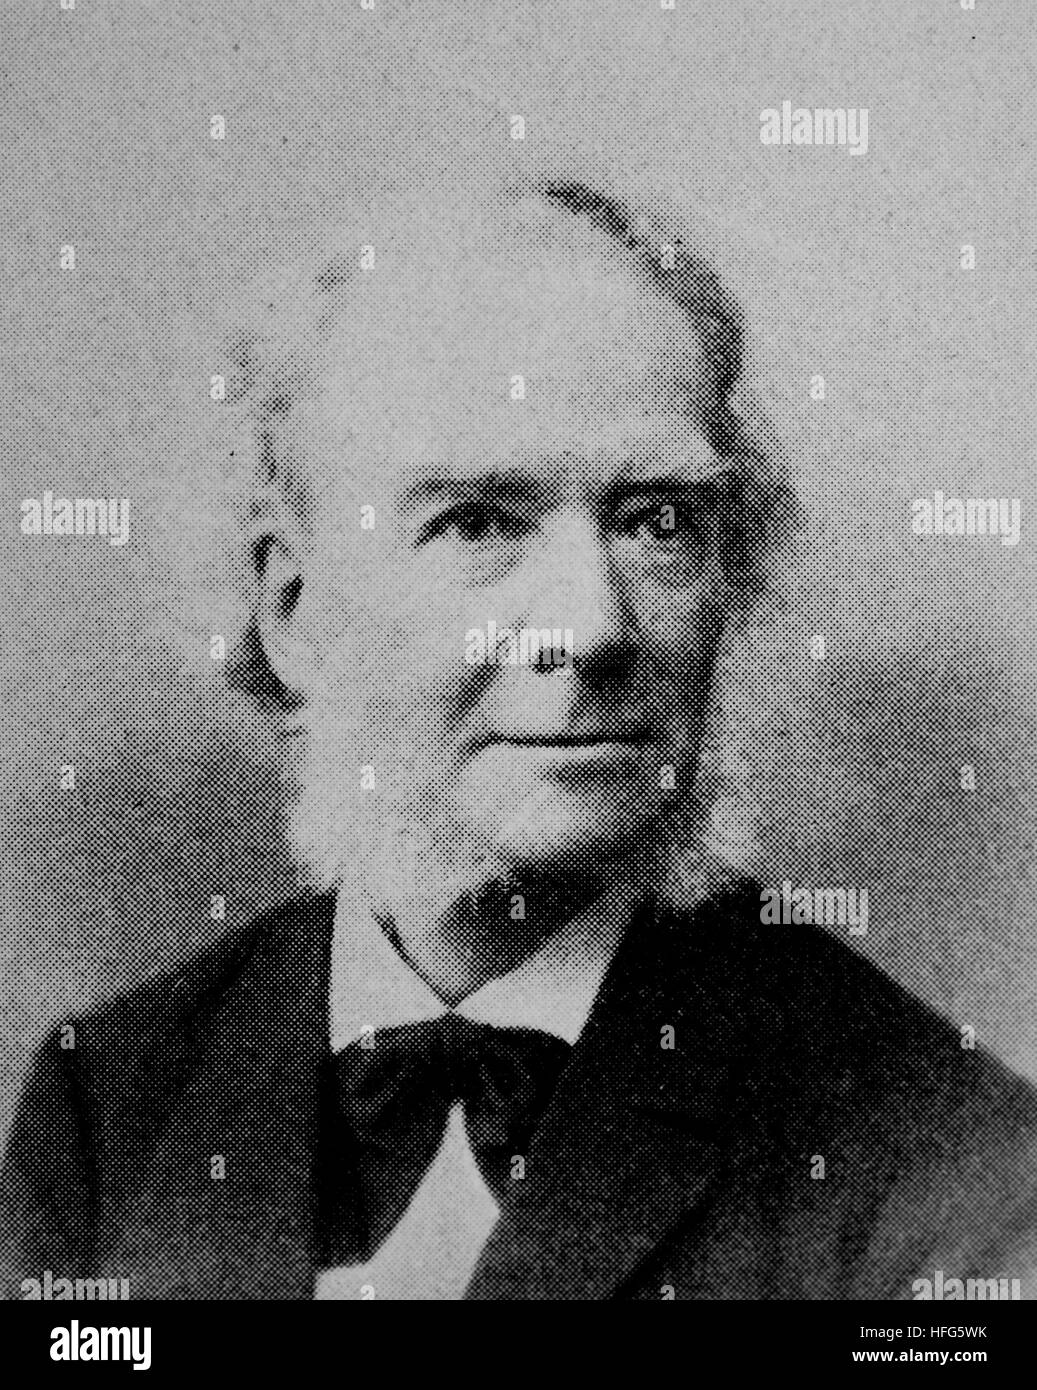 Carl Reinecke, 1824 - 1910, était un compositeur, chef d'orchestre et pianiste., reproduction photo de l'année 1895, l'amélioration numérique Banque D'Images